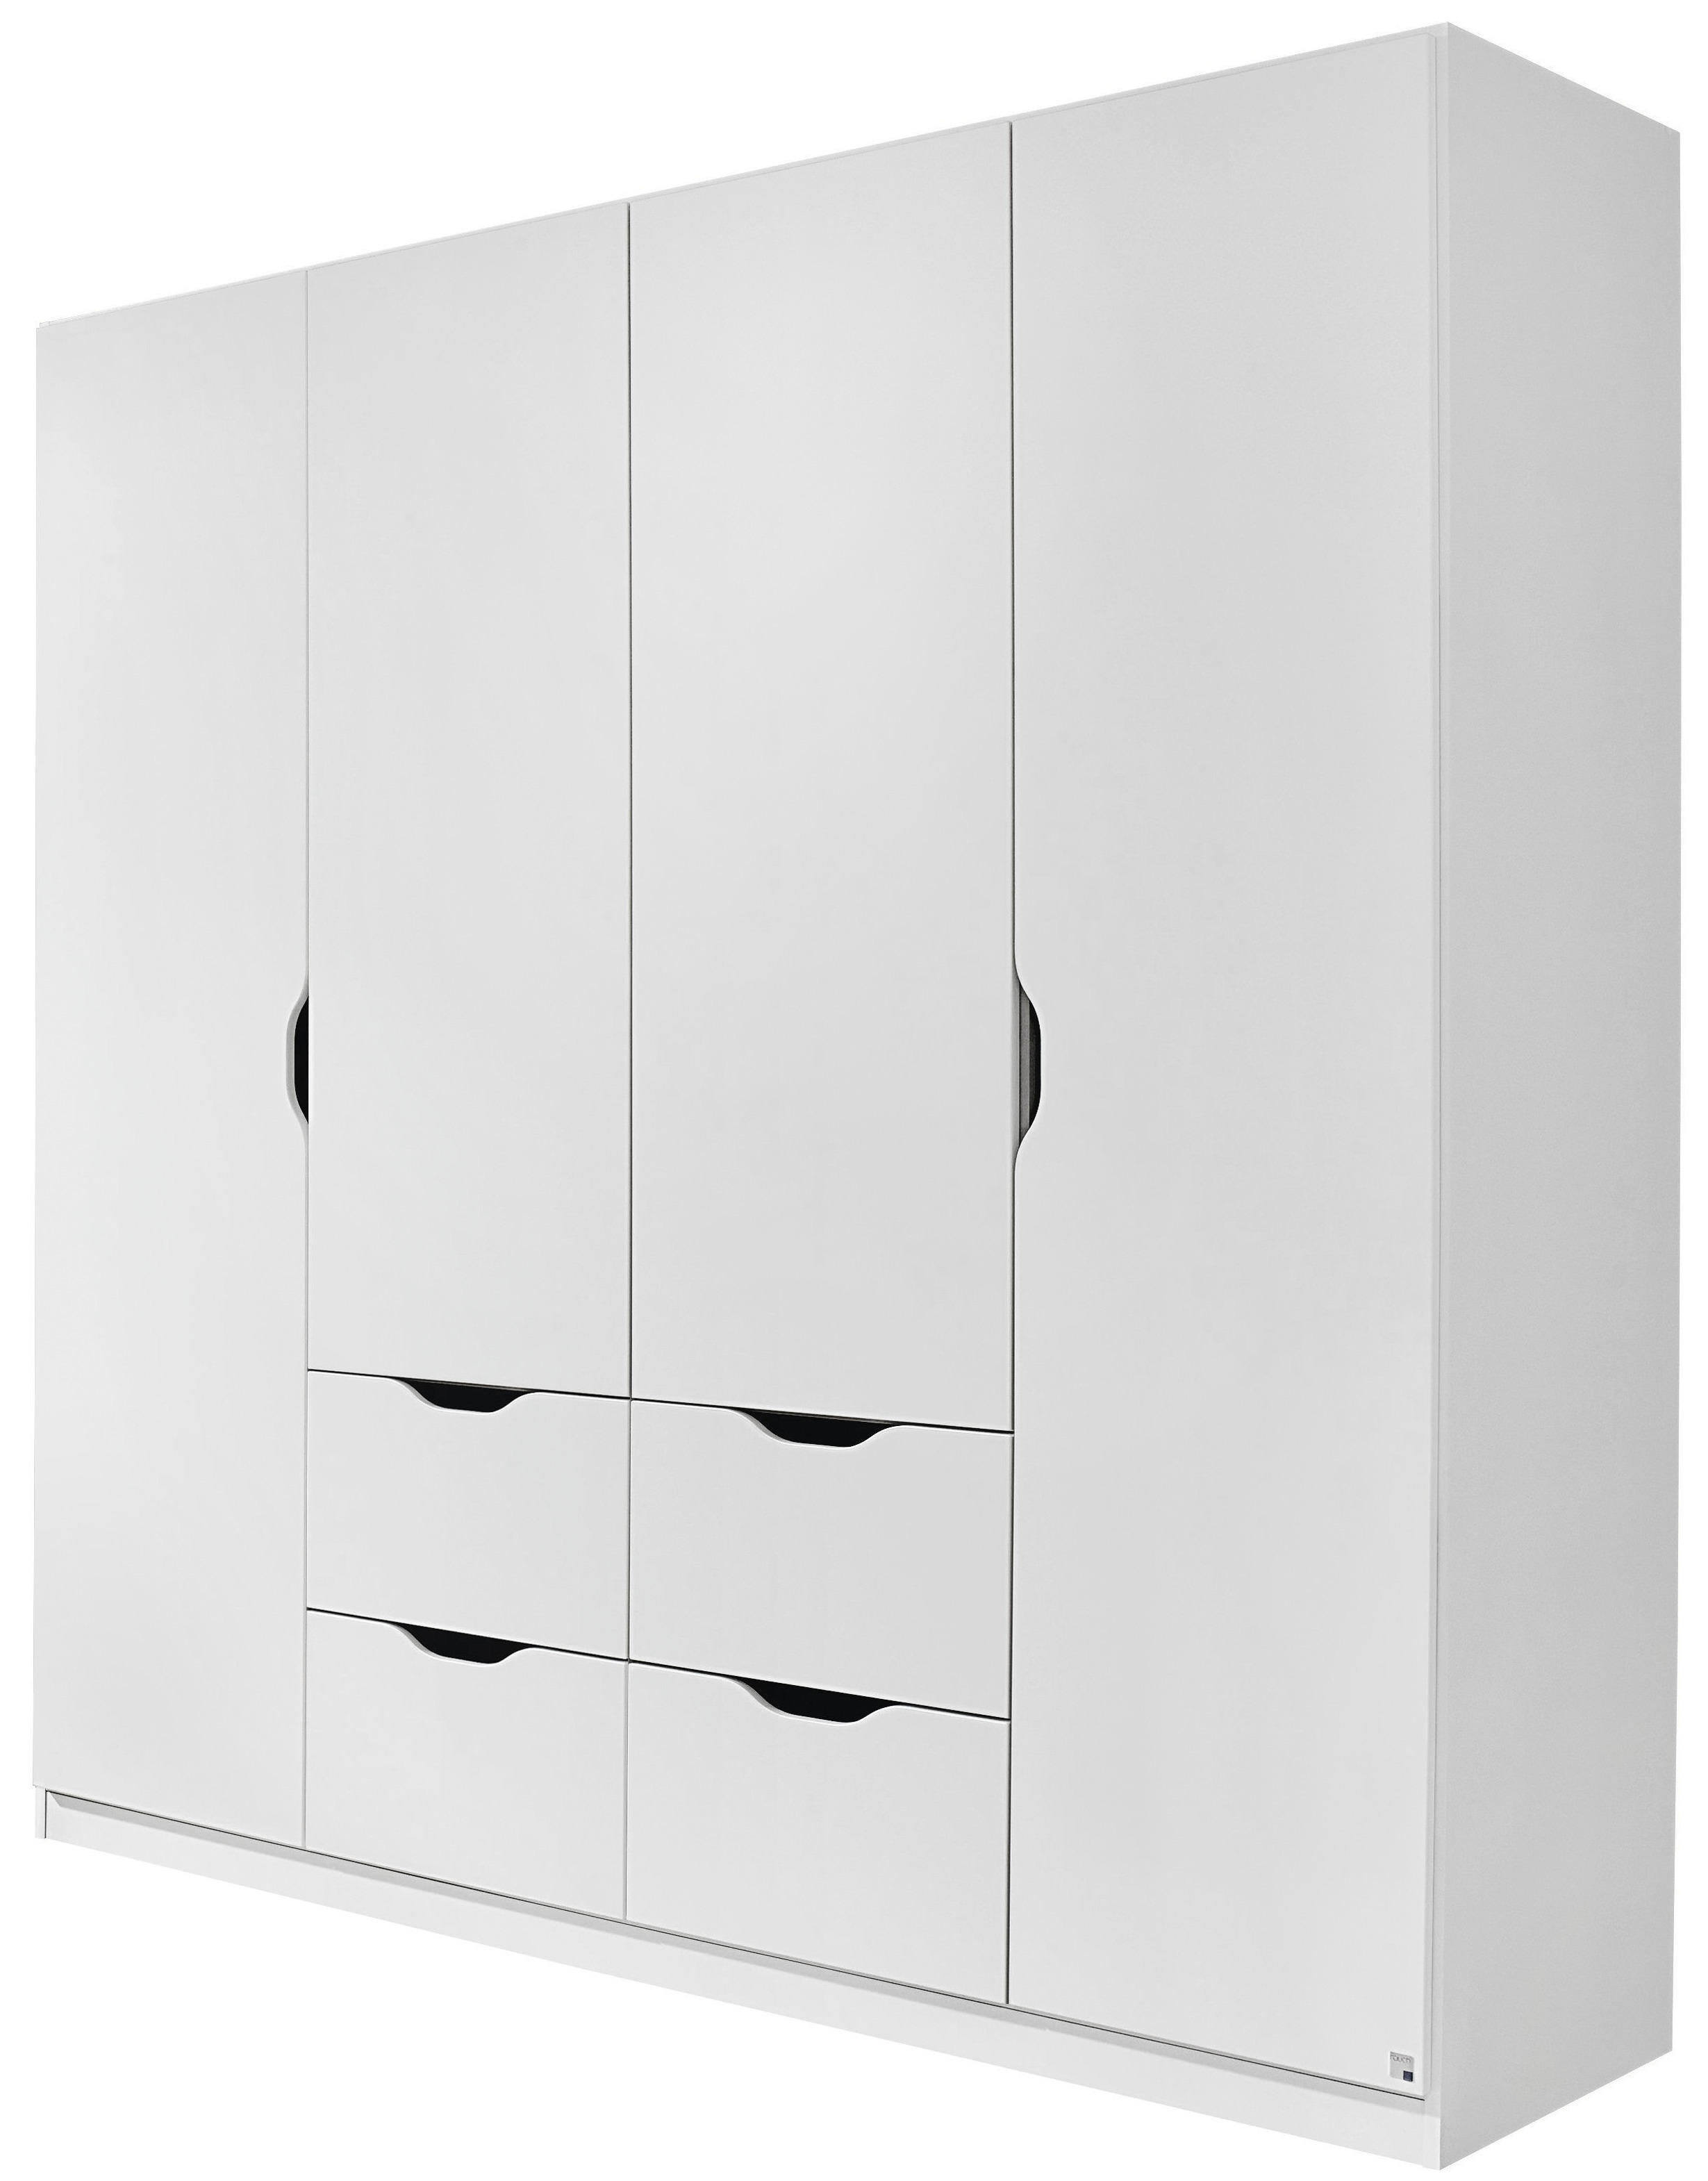 SKŘÍŇ, bílá, 181/197/54 cm - bílá, Moderní, kompozitní dřevo (181/197/54cm) - Boxxx